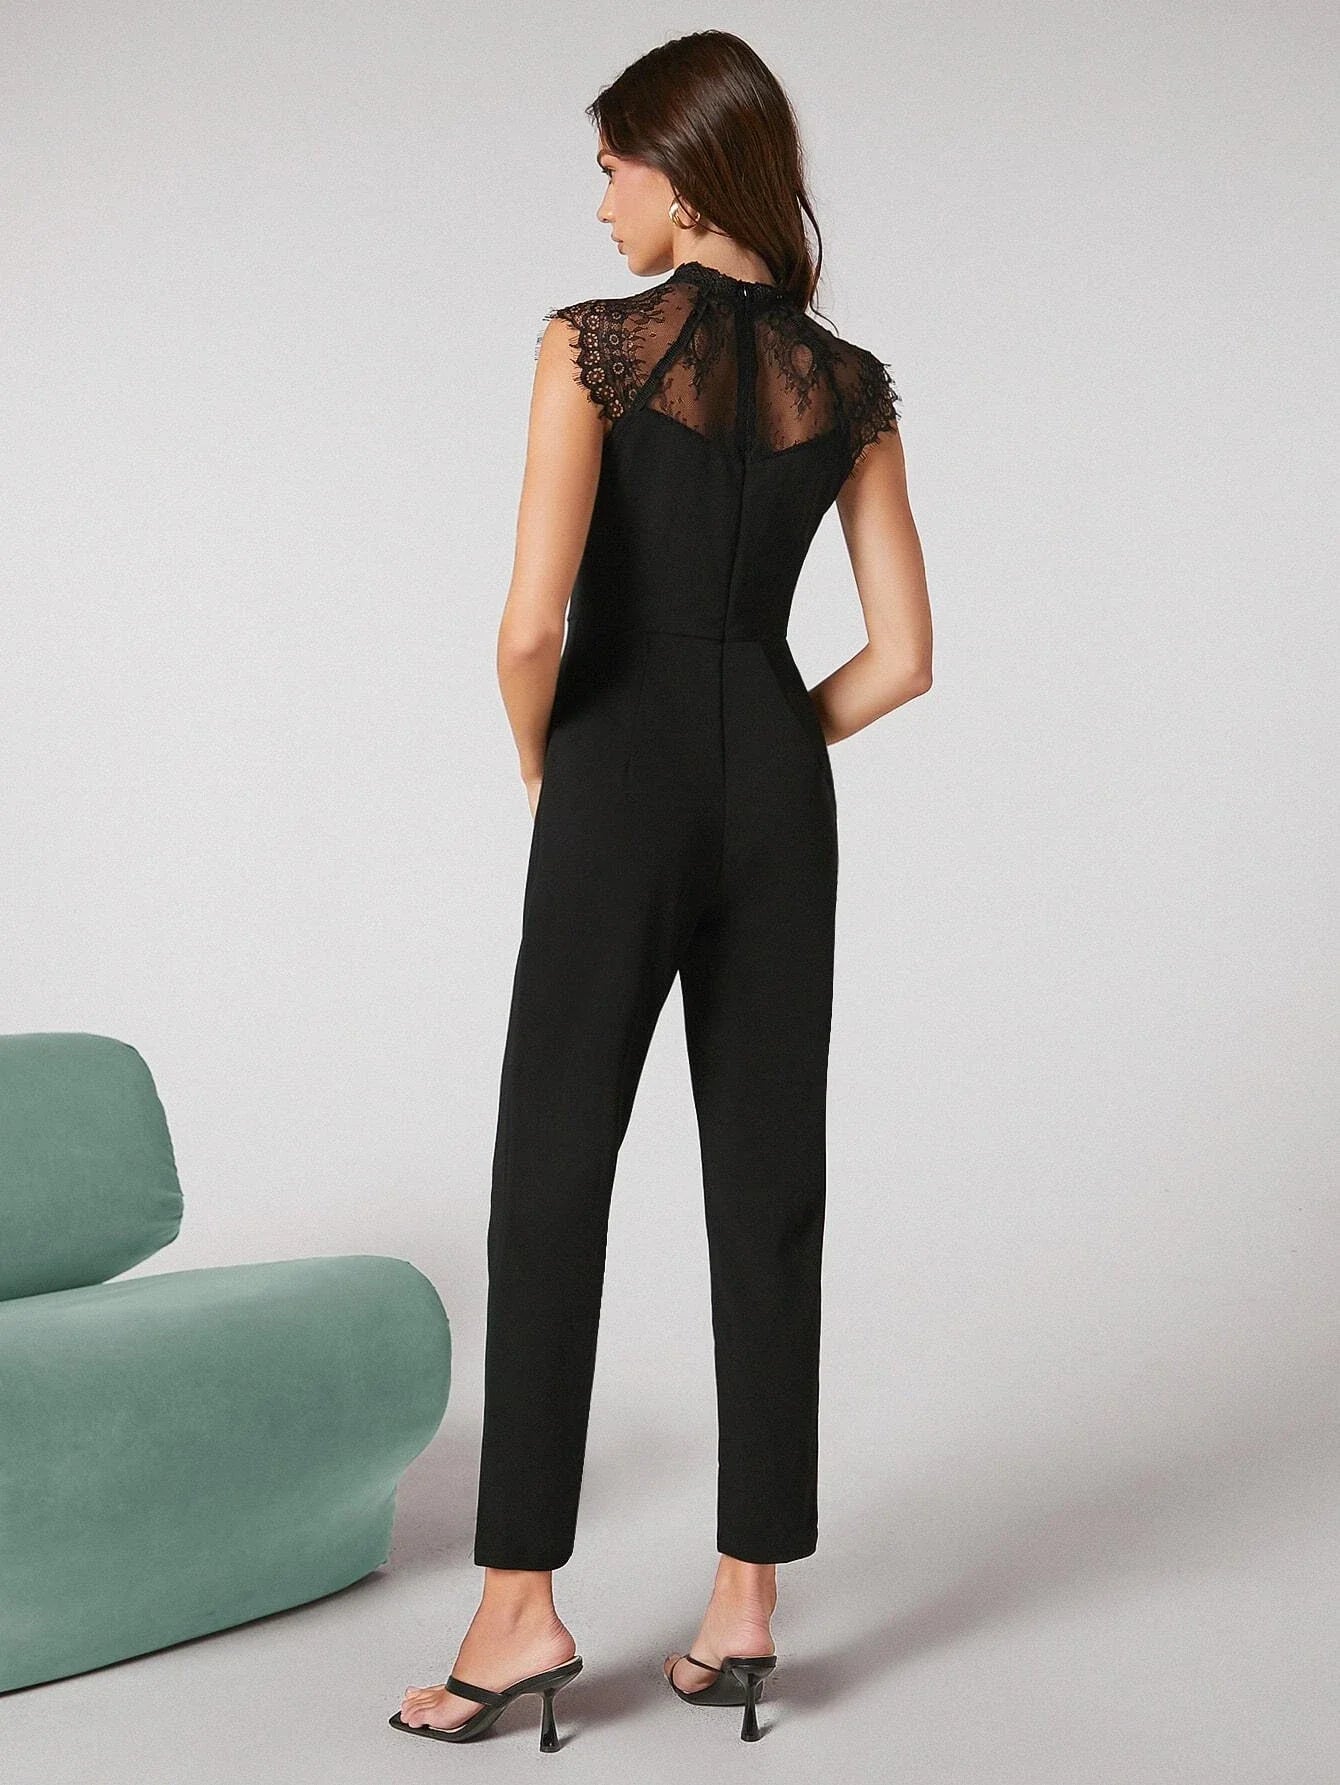 Buy Shein Bizwear Zip Back Contrast Lace Sleeveless Jumpsuit in Pakistan